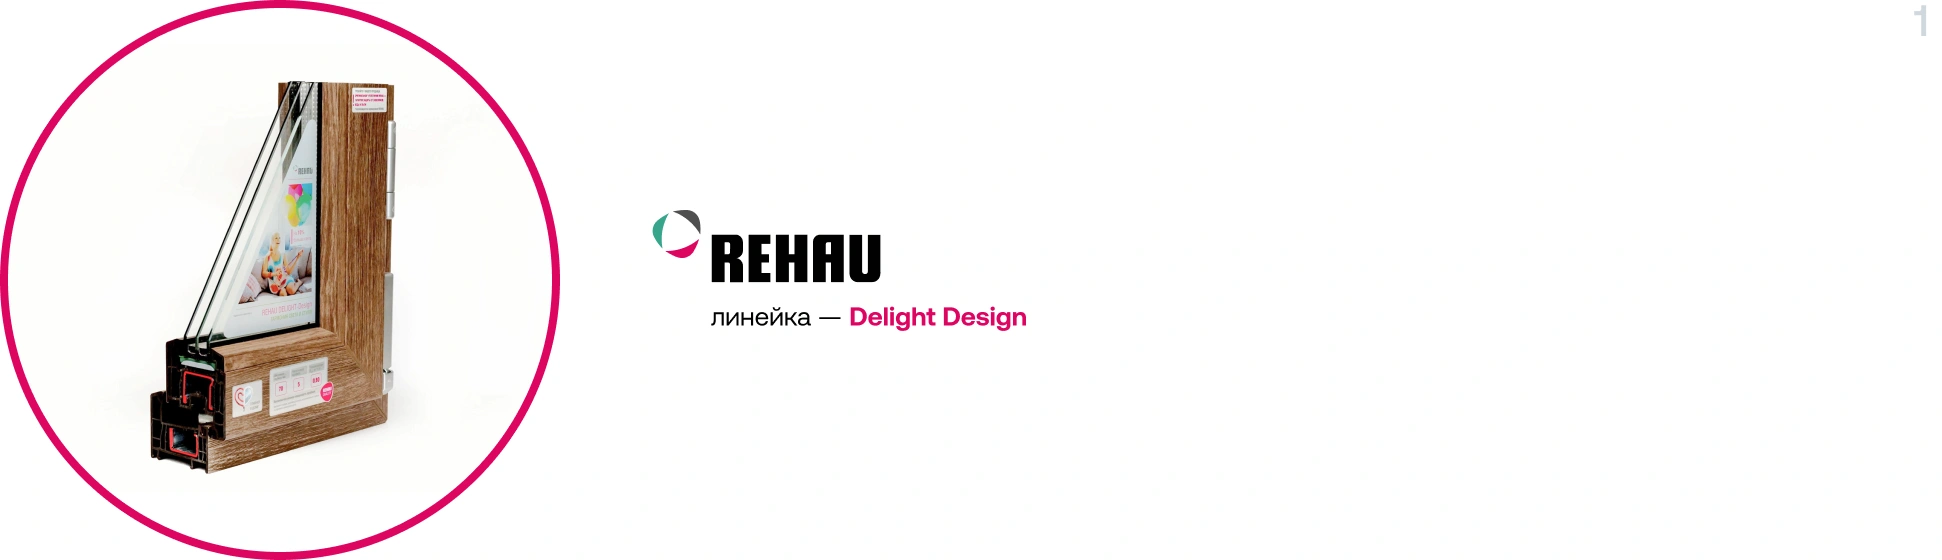 Профиль Rehau Delight Design